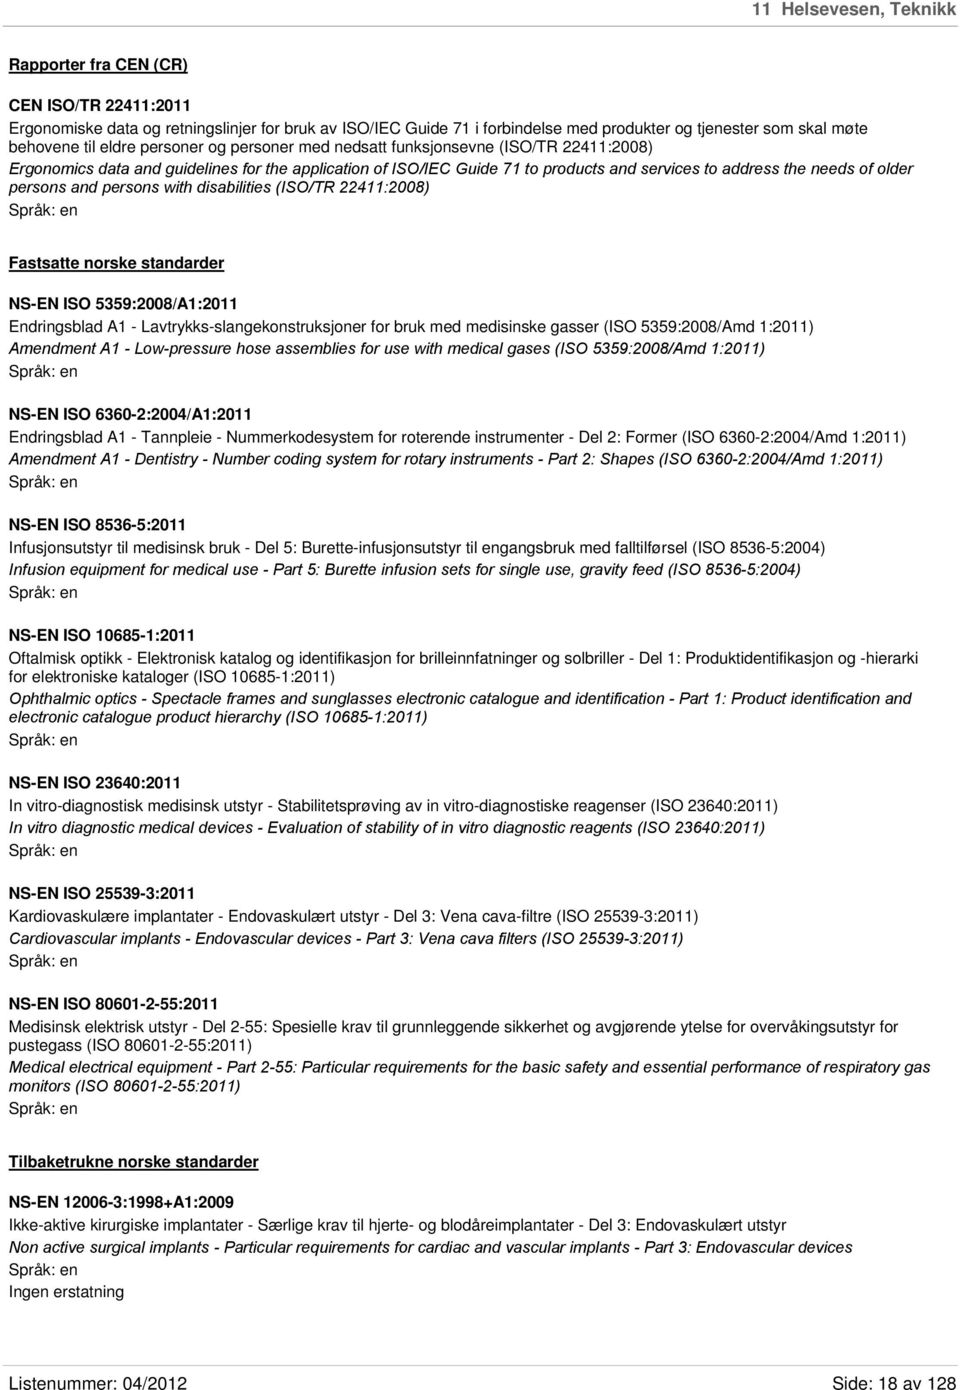 persons and persons with disabilities (ISO/TR 22411:2008) Fastsatte norske standarder NS-EN ISO 5359:2008/A1:2011 Endringsblad A1 - Lavtrykks-slangekonstruksjoner for bruk med medisinske gasser (ISO